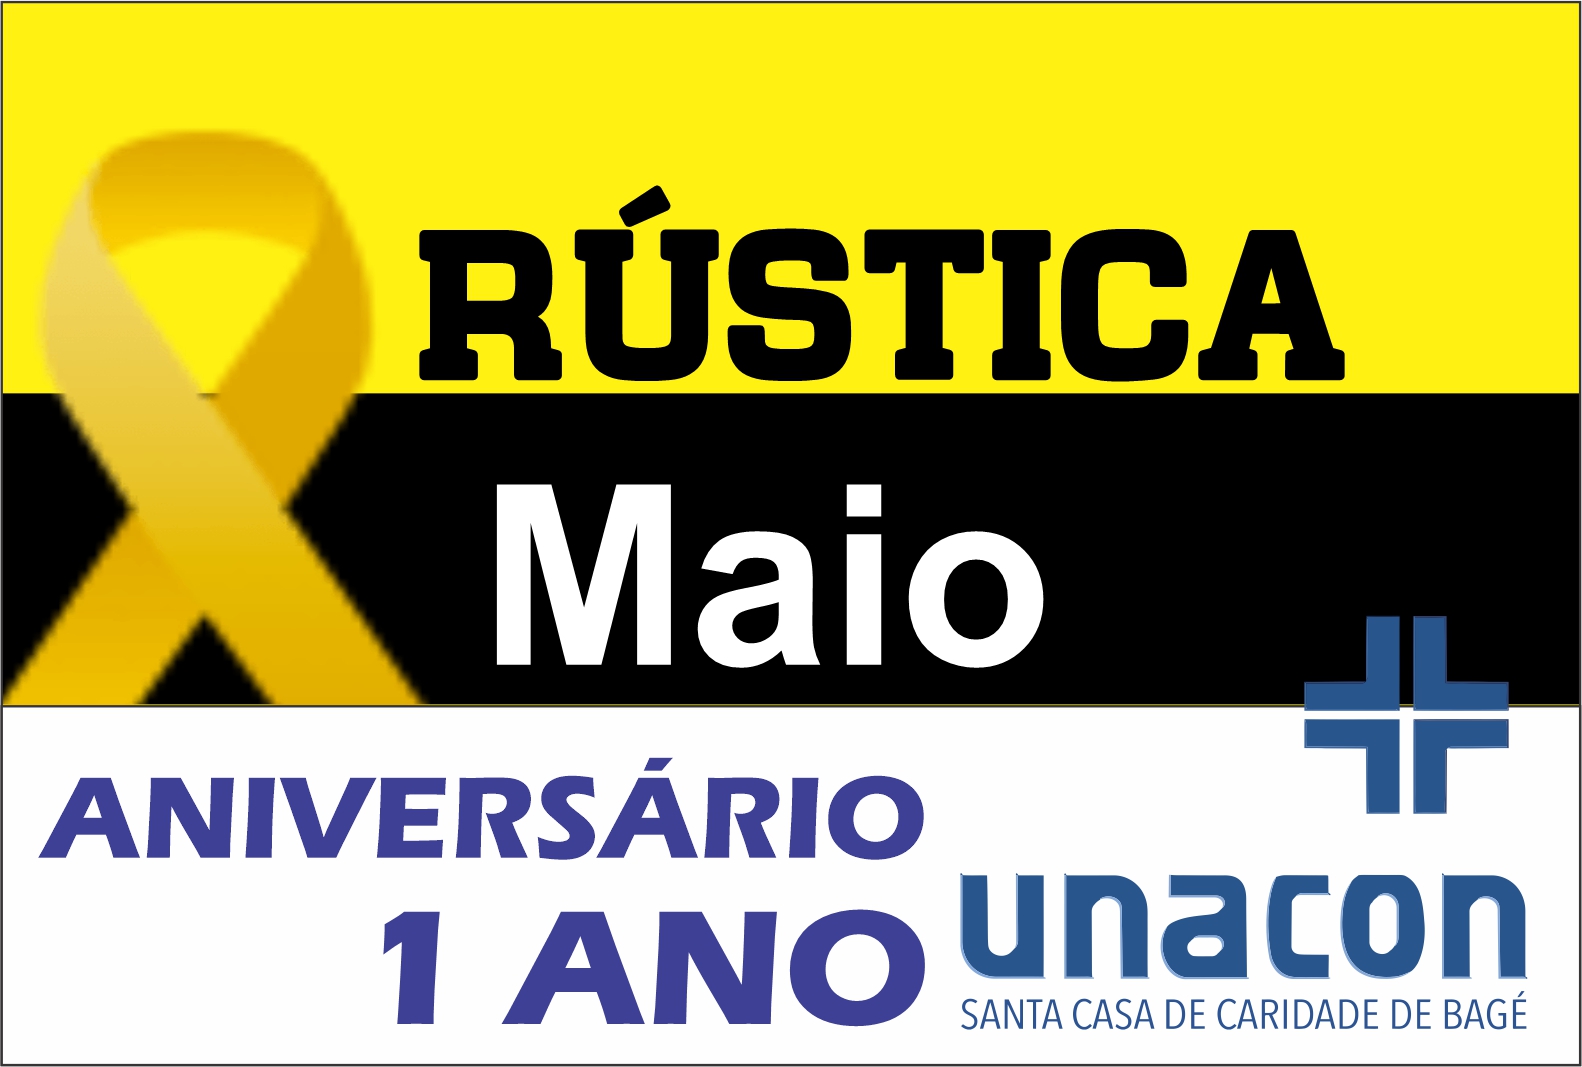 Rústica Maio Amarelo - Comemoração 1 Ano UNACON